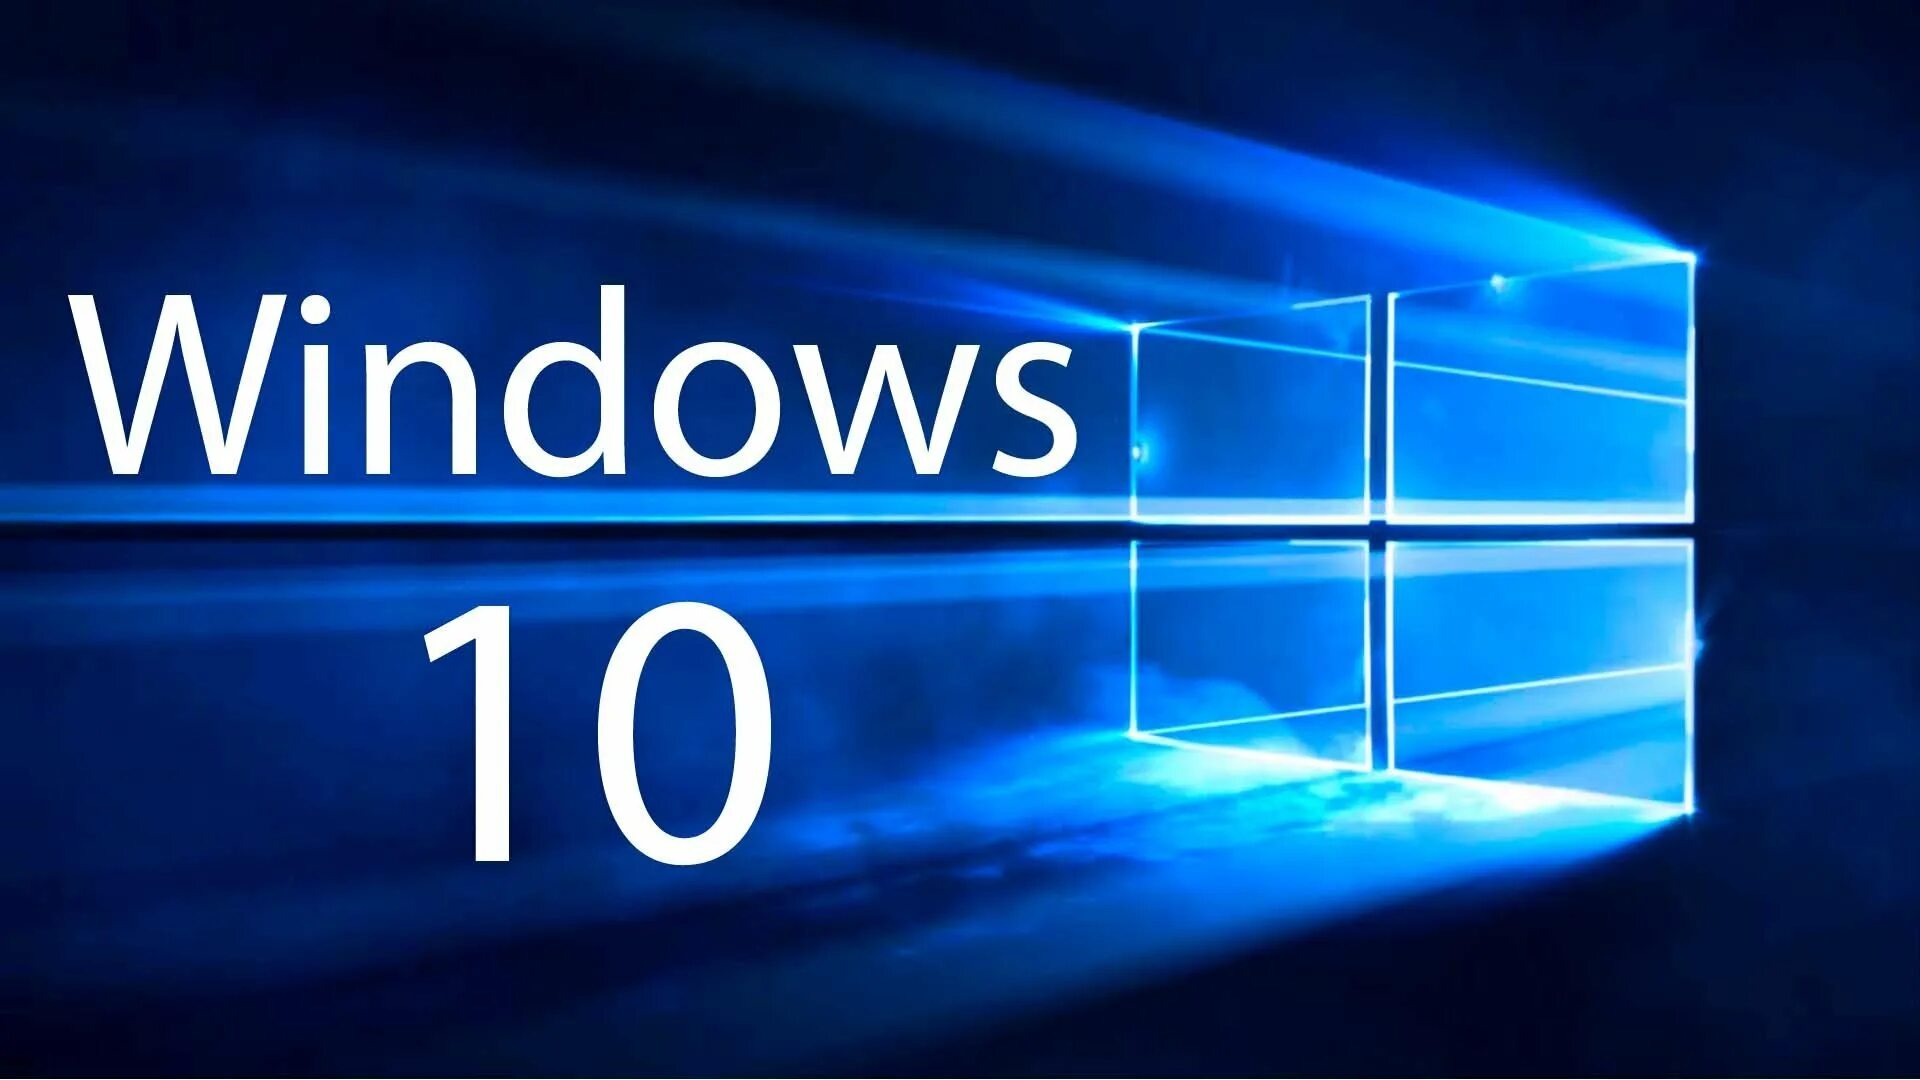 Виндовс 10 информация. Microsoft Windows 10. ОС виндовс 10. Логотип виндовс 10. Картинки виндовс 10.